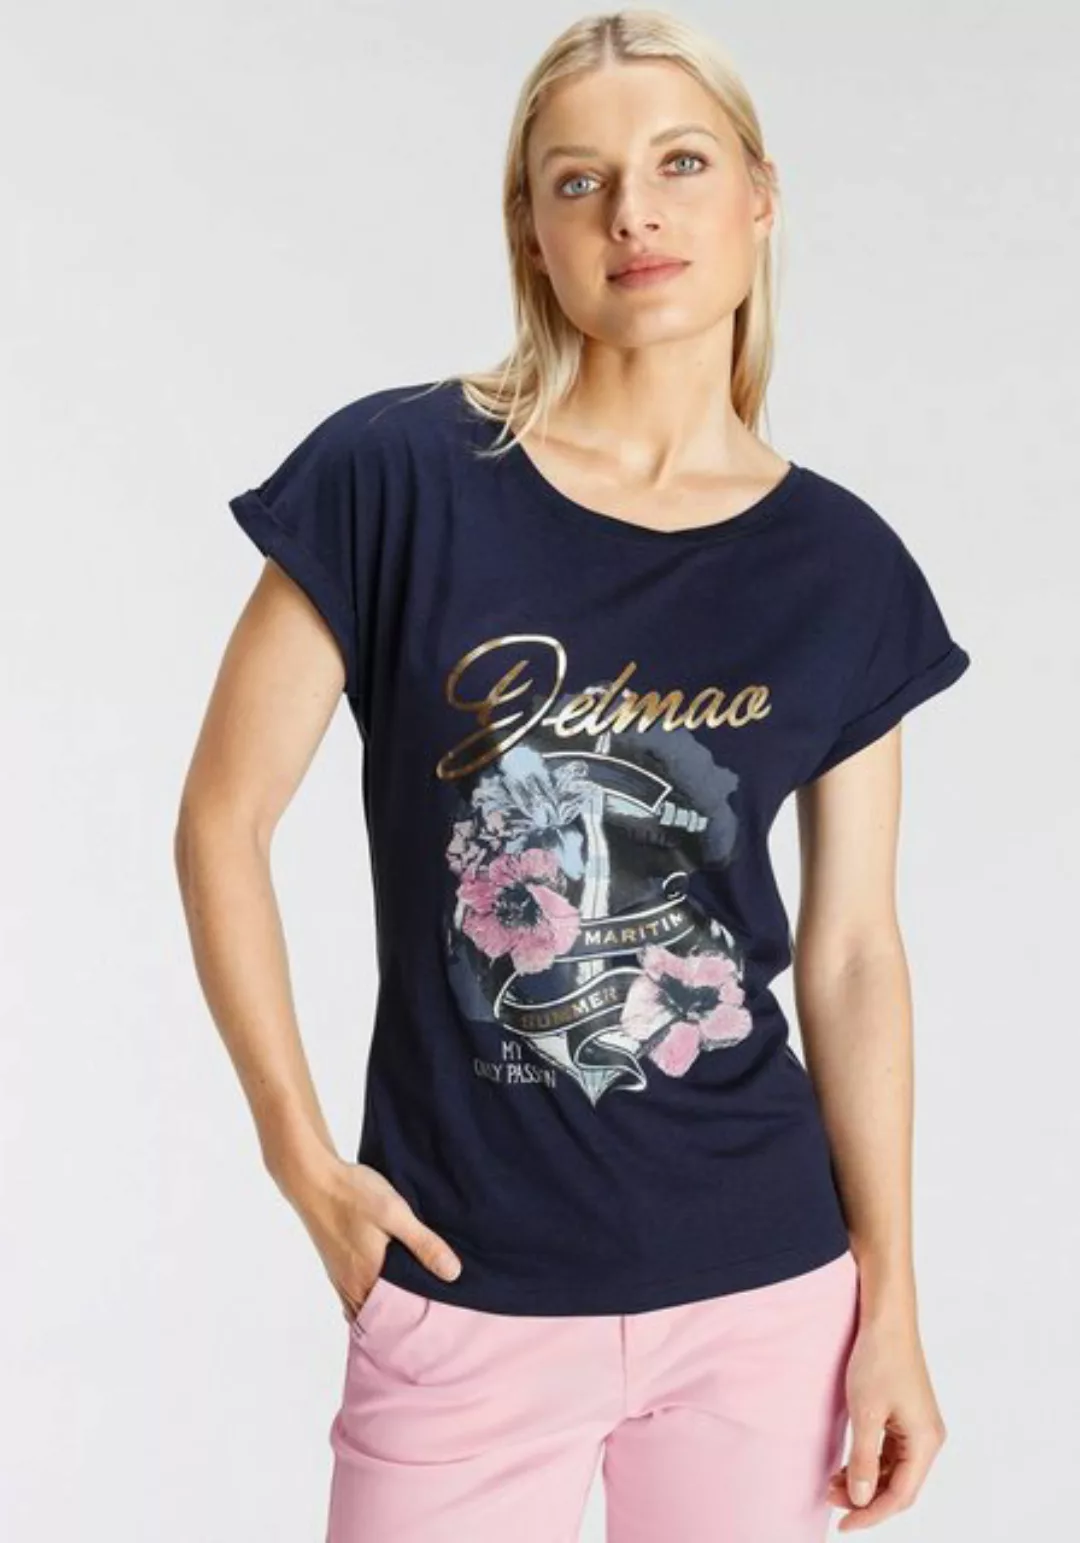 DELMAO Print-Shirt mit geblümten Anker-Logodruck - NEUE MARKE! günstig online kaufen